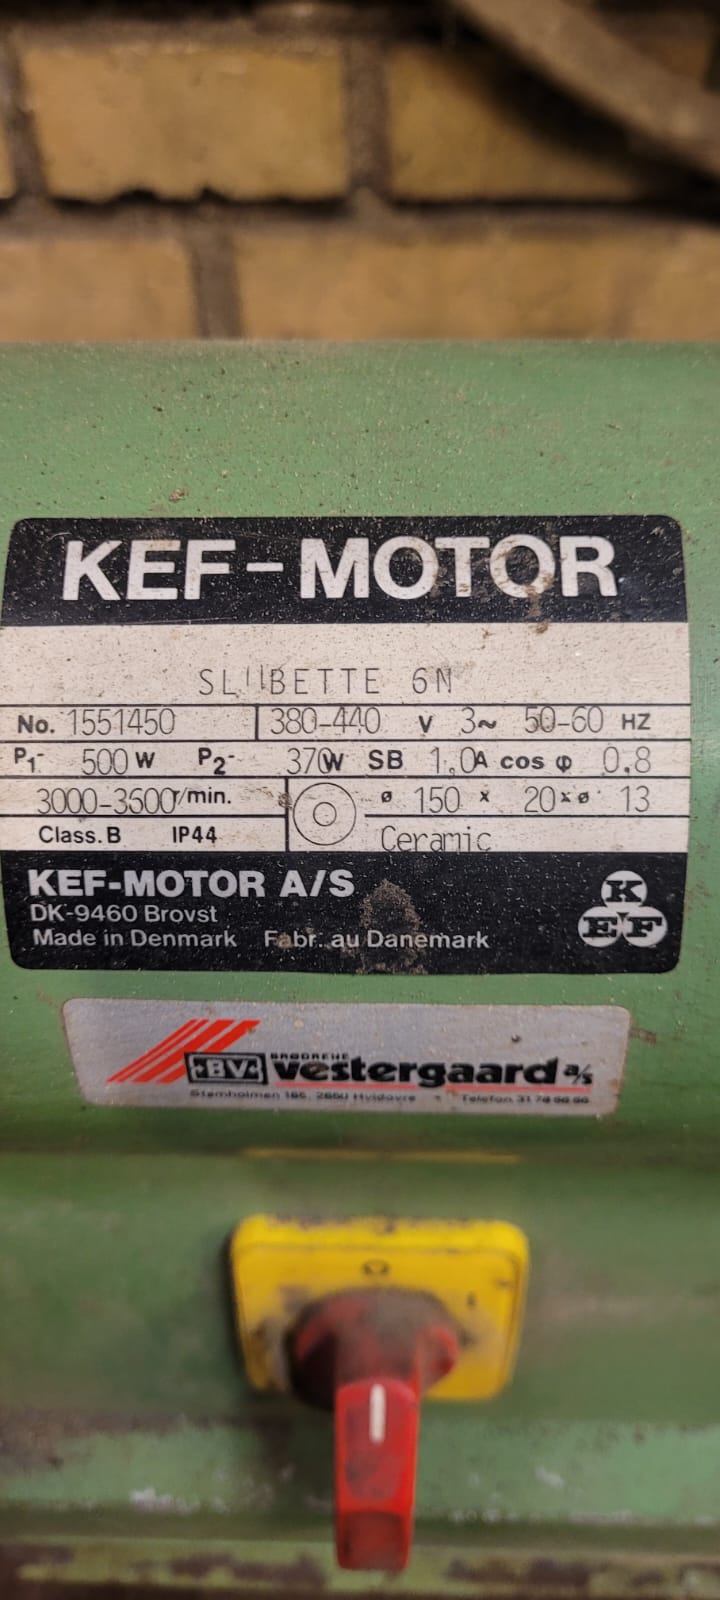 KEF-Motor slibette 6N, KEF-MOTOR